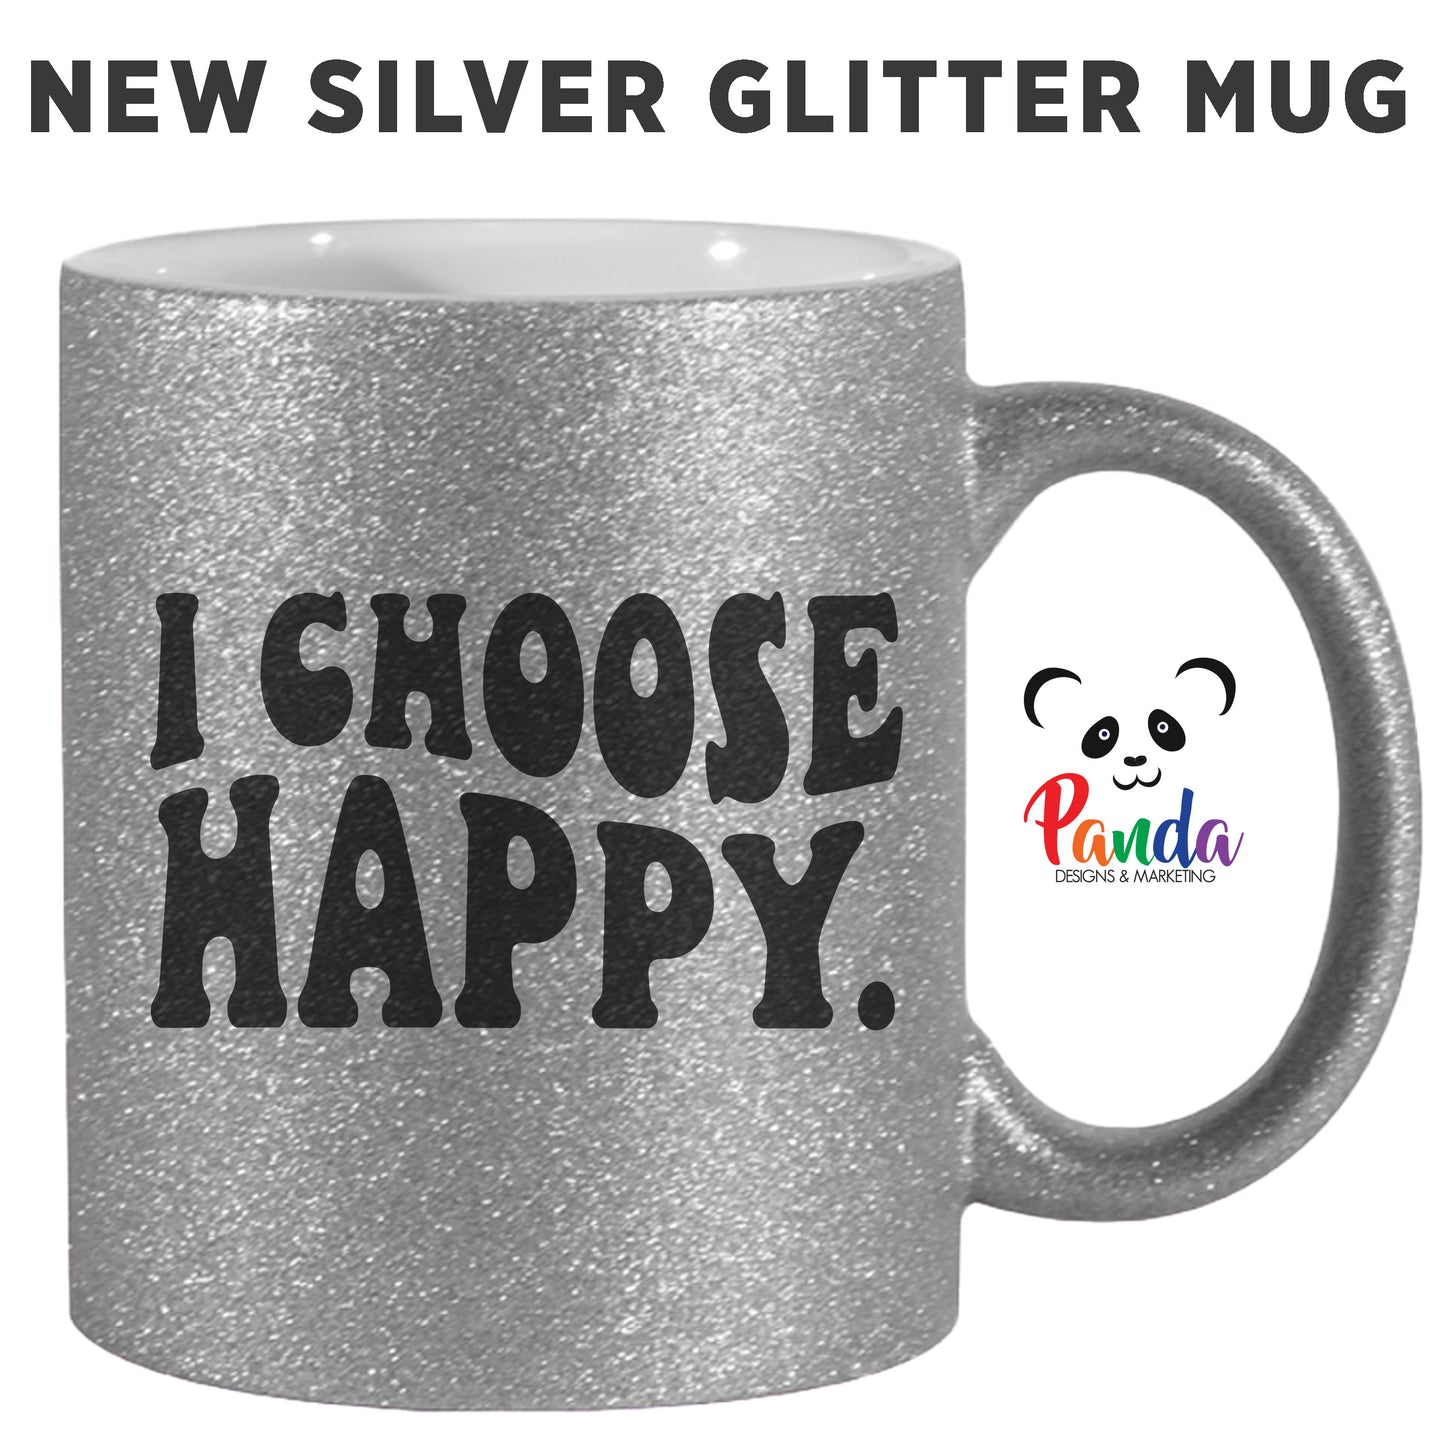 I CHOOSE HAPPY. Ceramic Mug (multiple sizes)